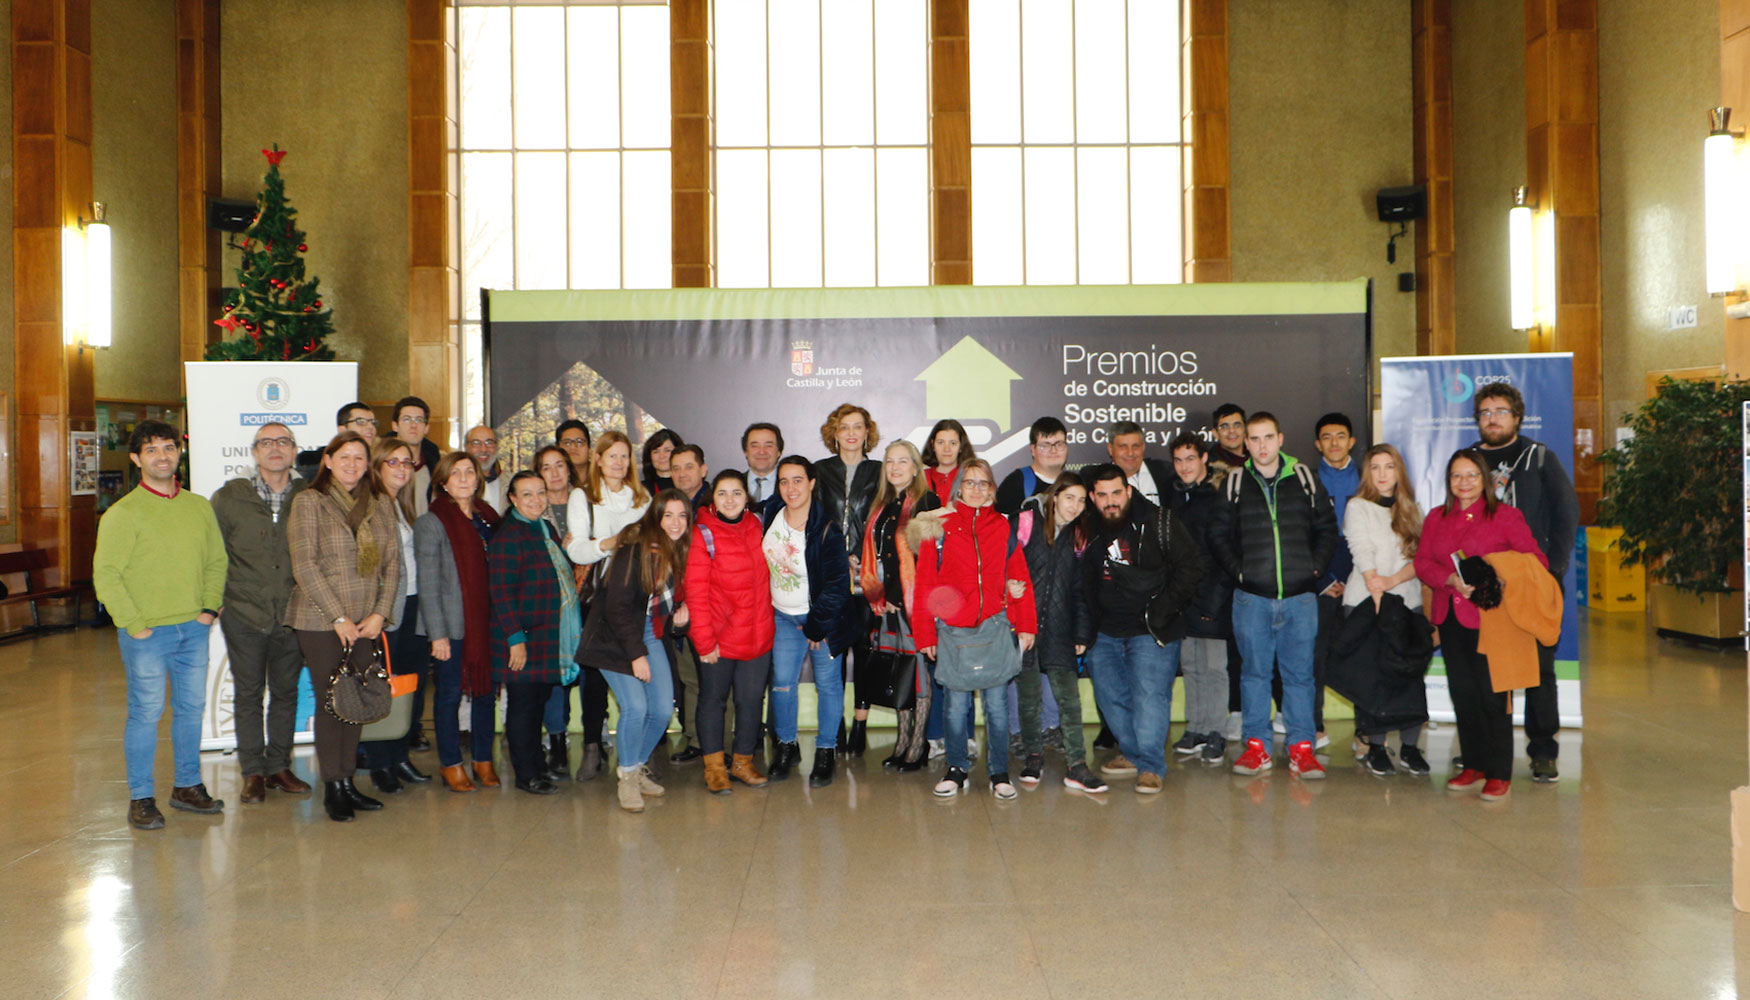 Mara Pardo lvarez durante su visita a la muestra de los Premios de Construccin Sostenible de Castilla y Len expuestos en Madrid...